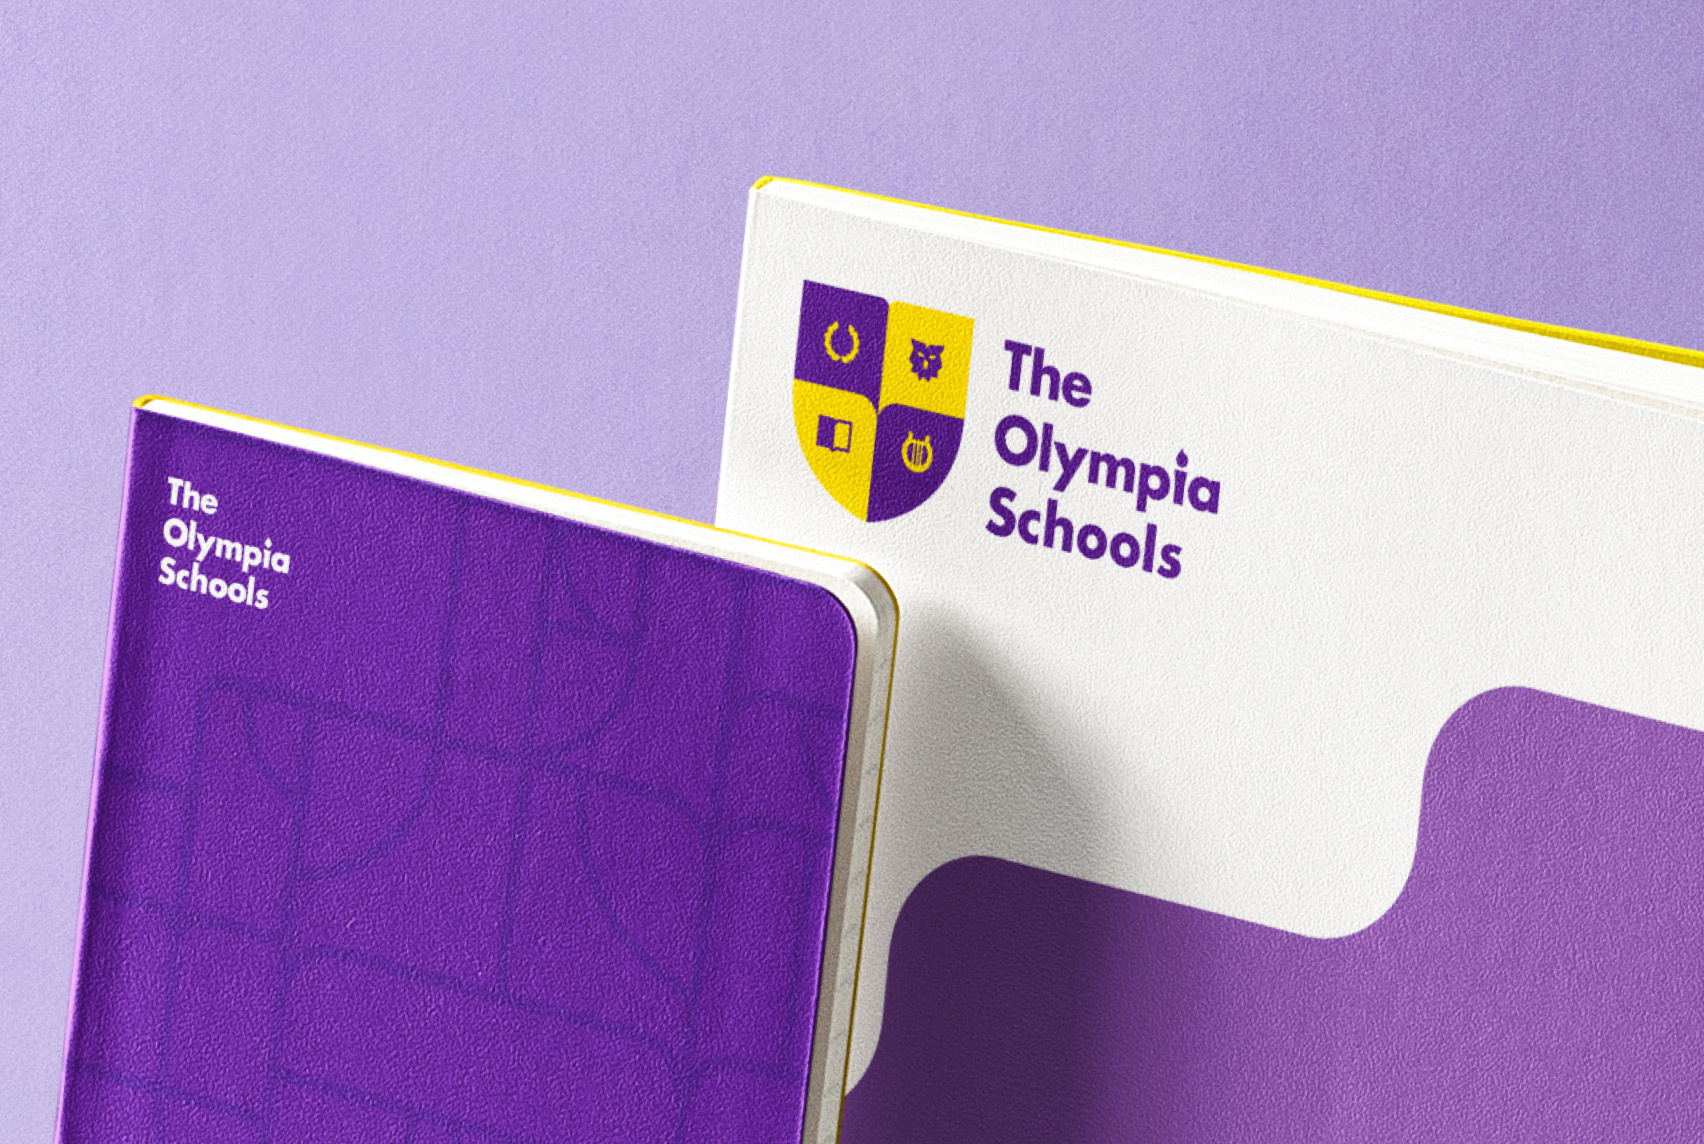 The Olympia Schools website design